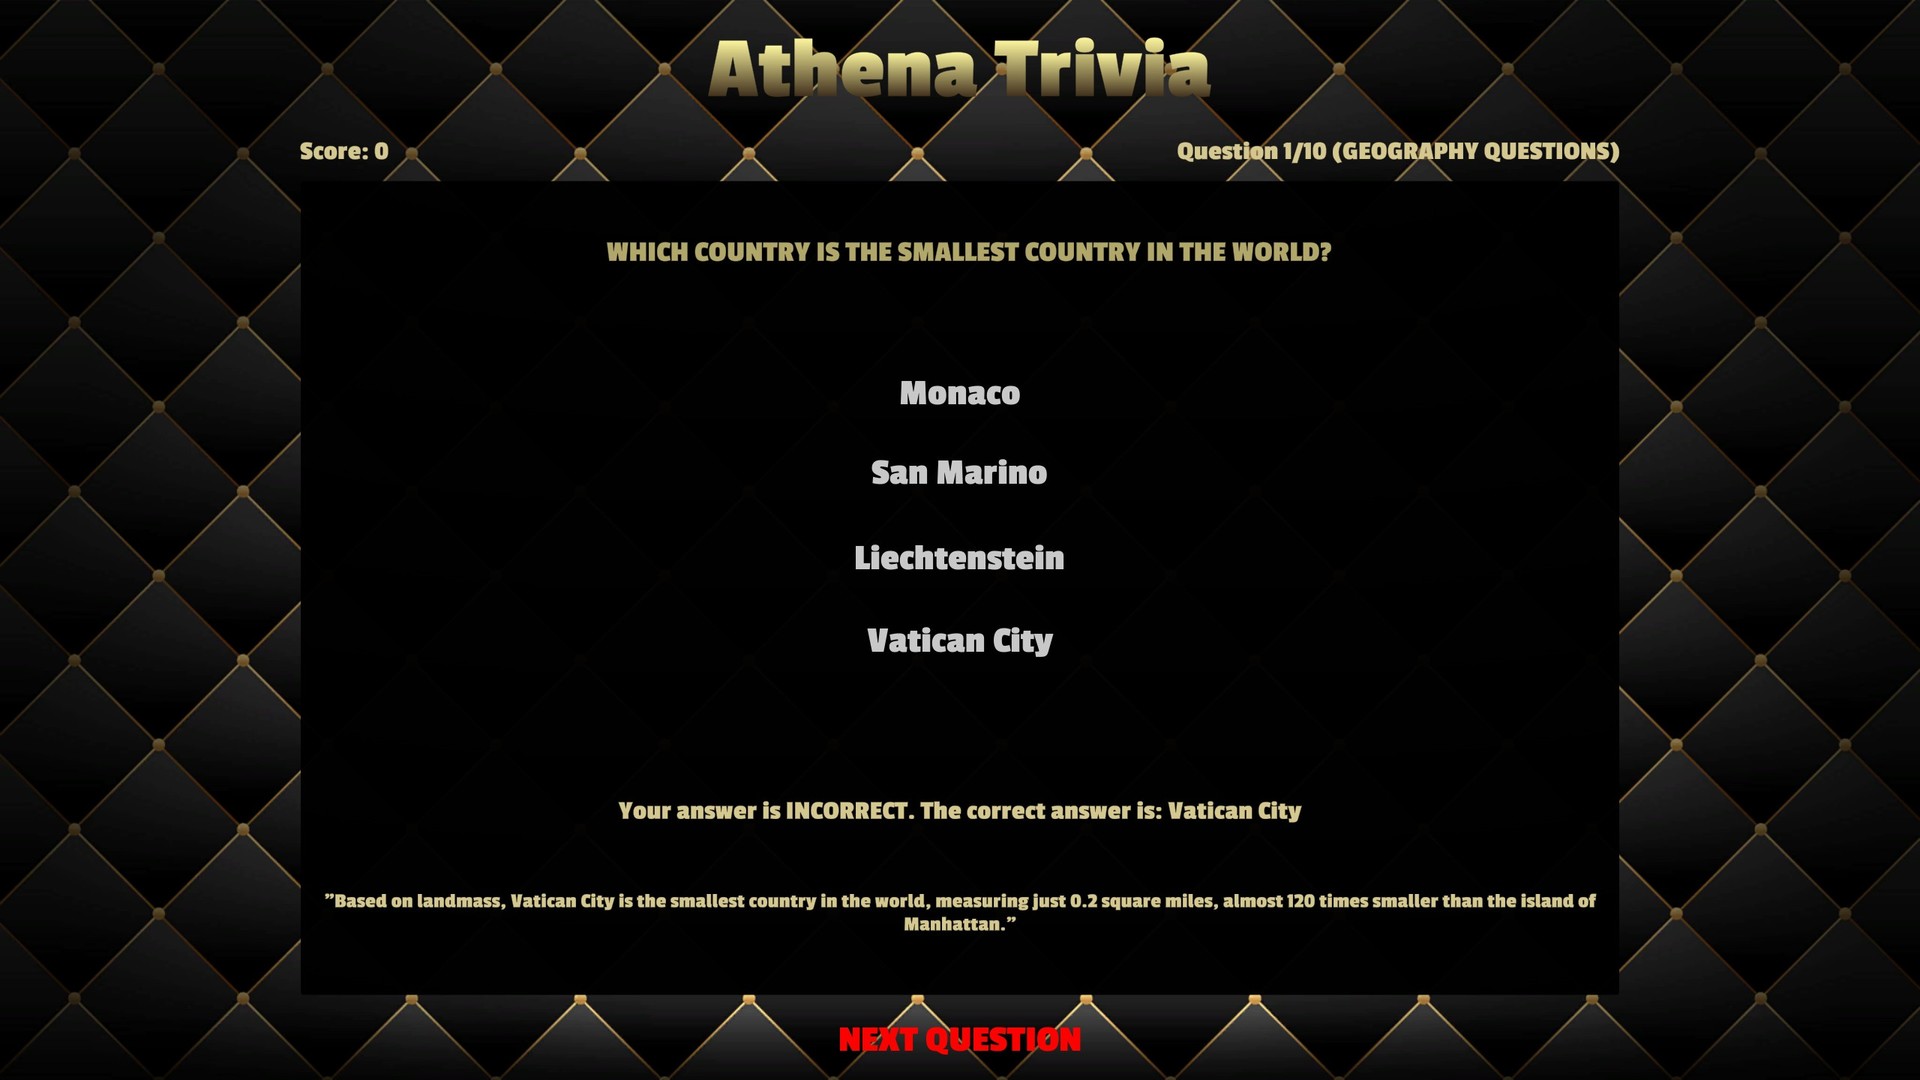 Athena Trivia Steam CD Key